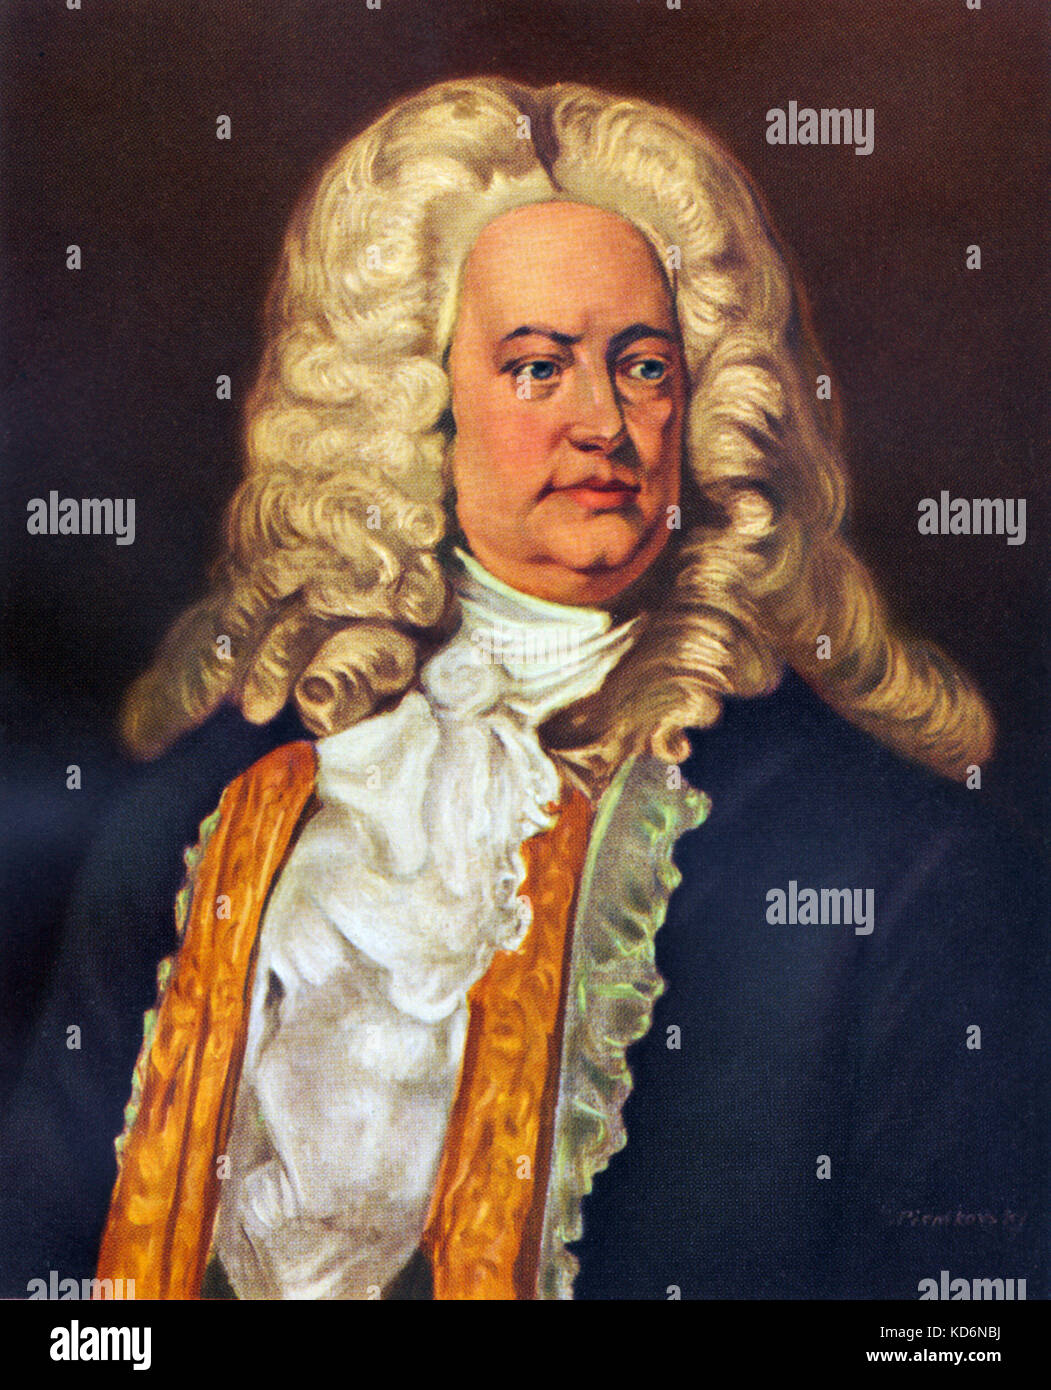 Georg Friedrich Händel, Portrait. Deutsch-englische Komponist von N. Piontkovsky. 1685-1759. Aus der Sammlung d'Art Suisse. Stockfoto